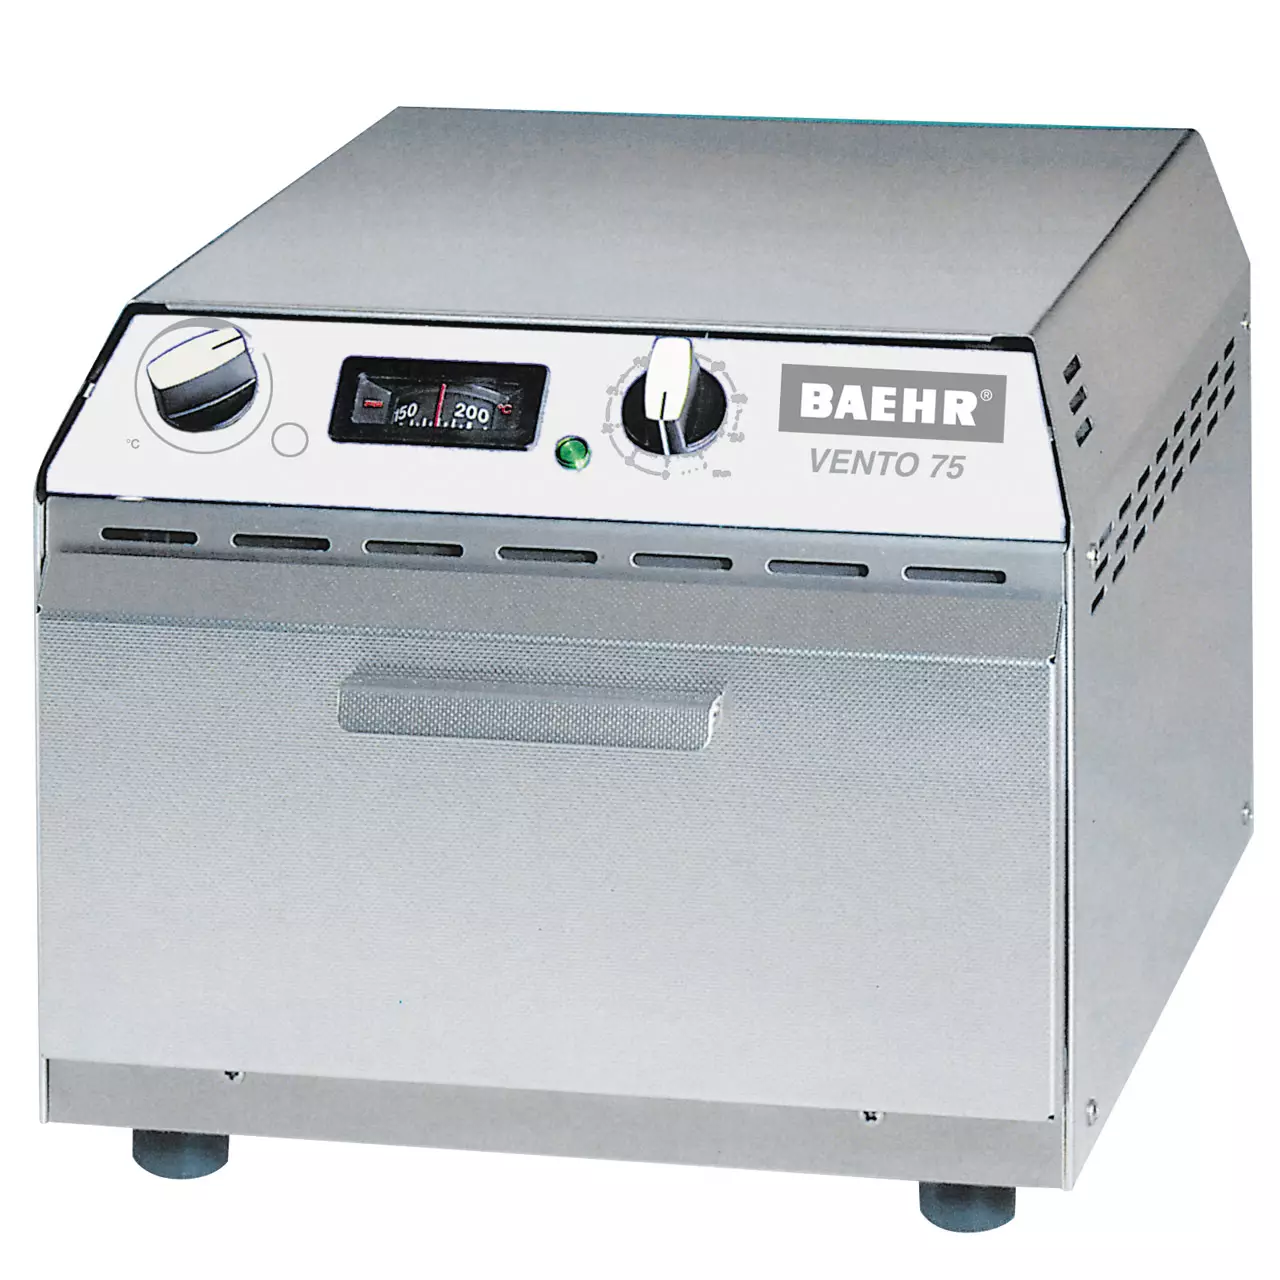 BAEHR VENTO 75 - horúcovzdušný sterilizátor